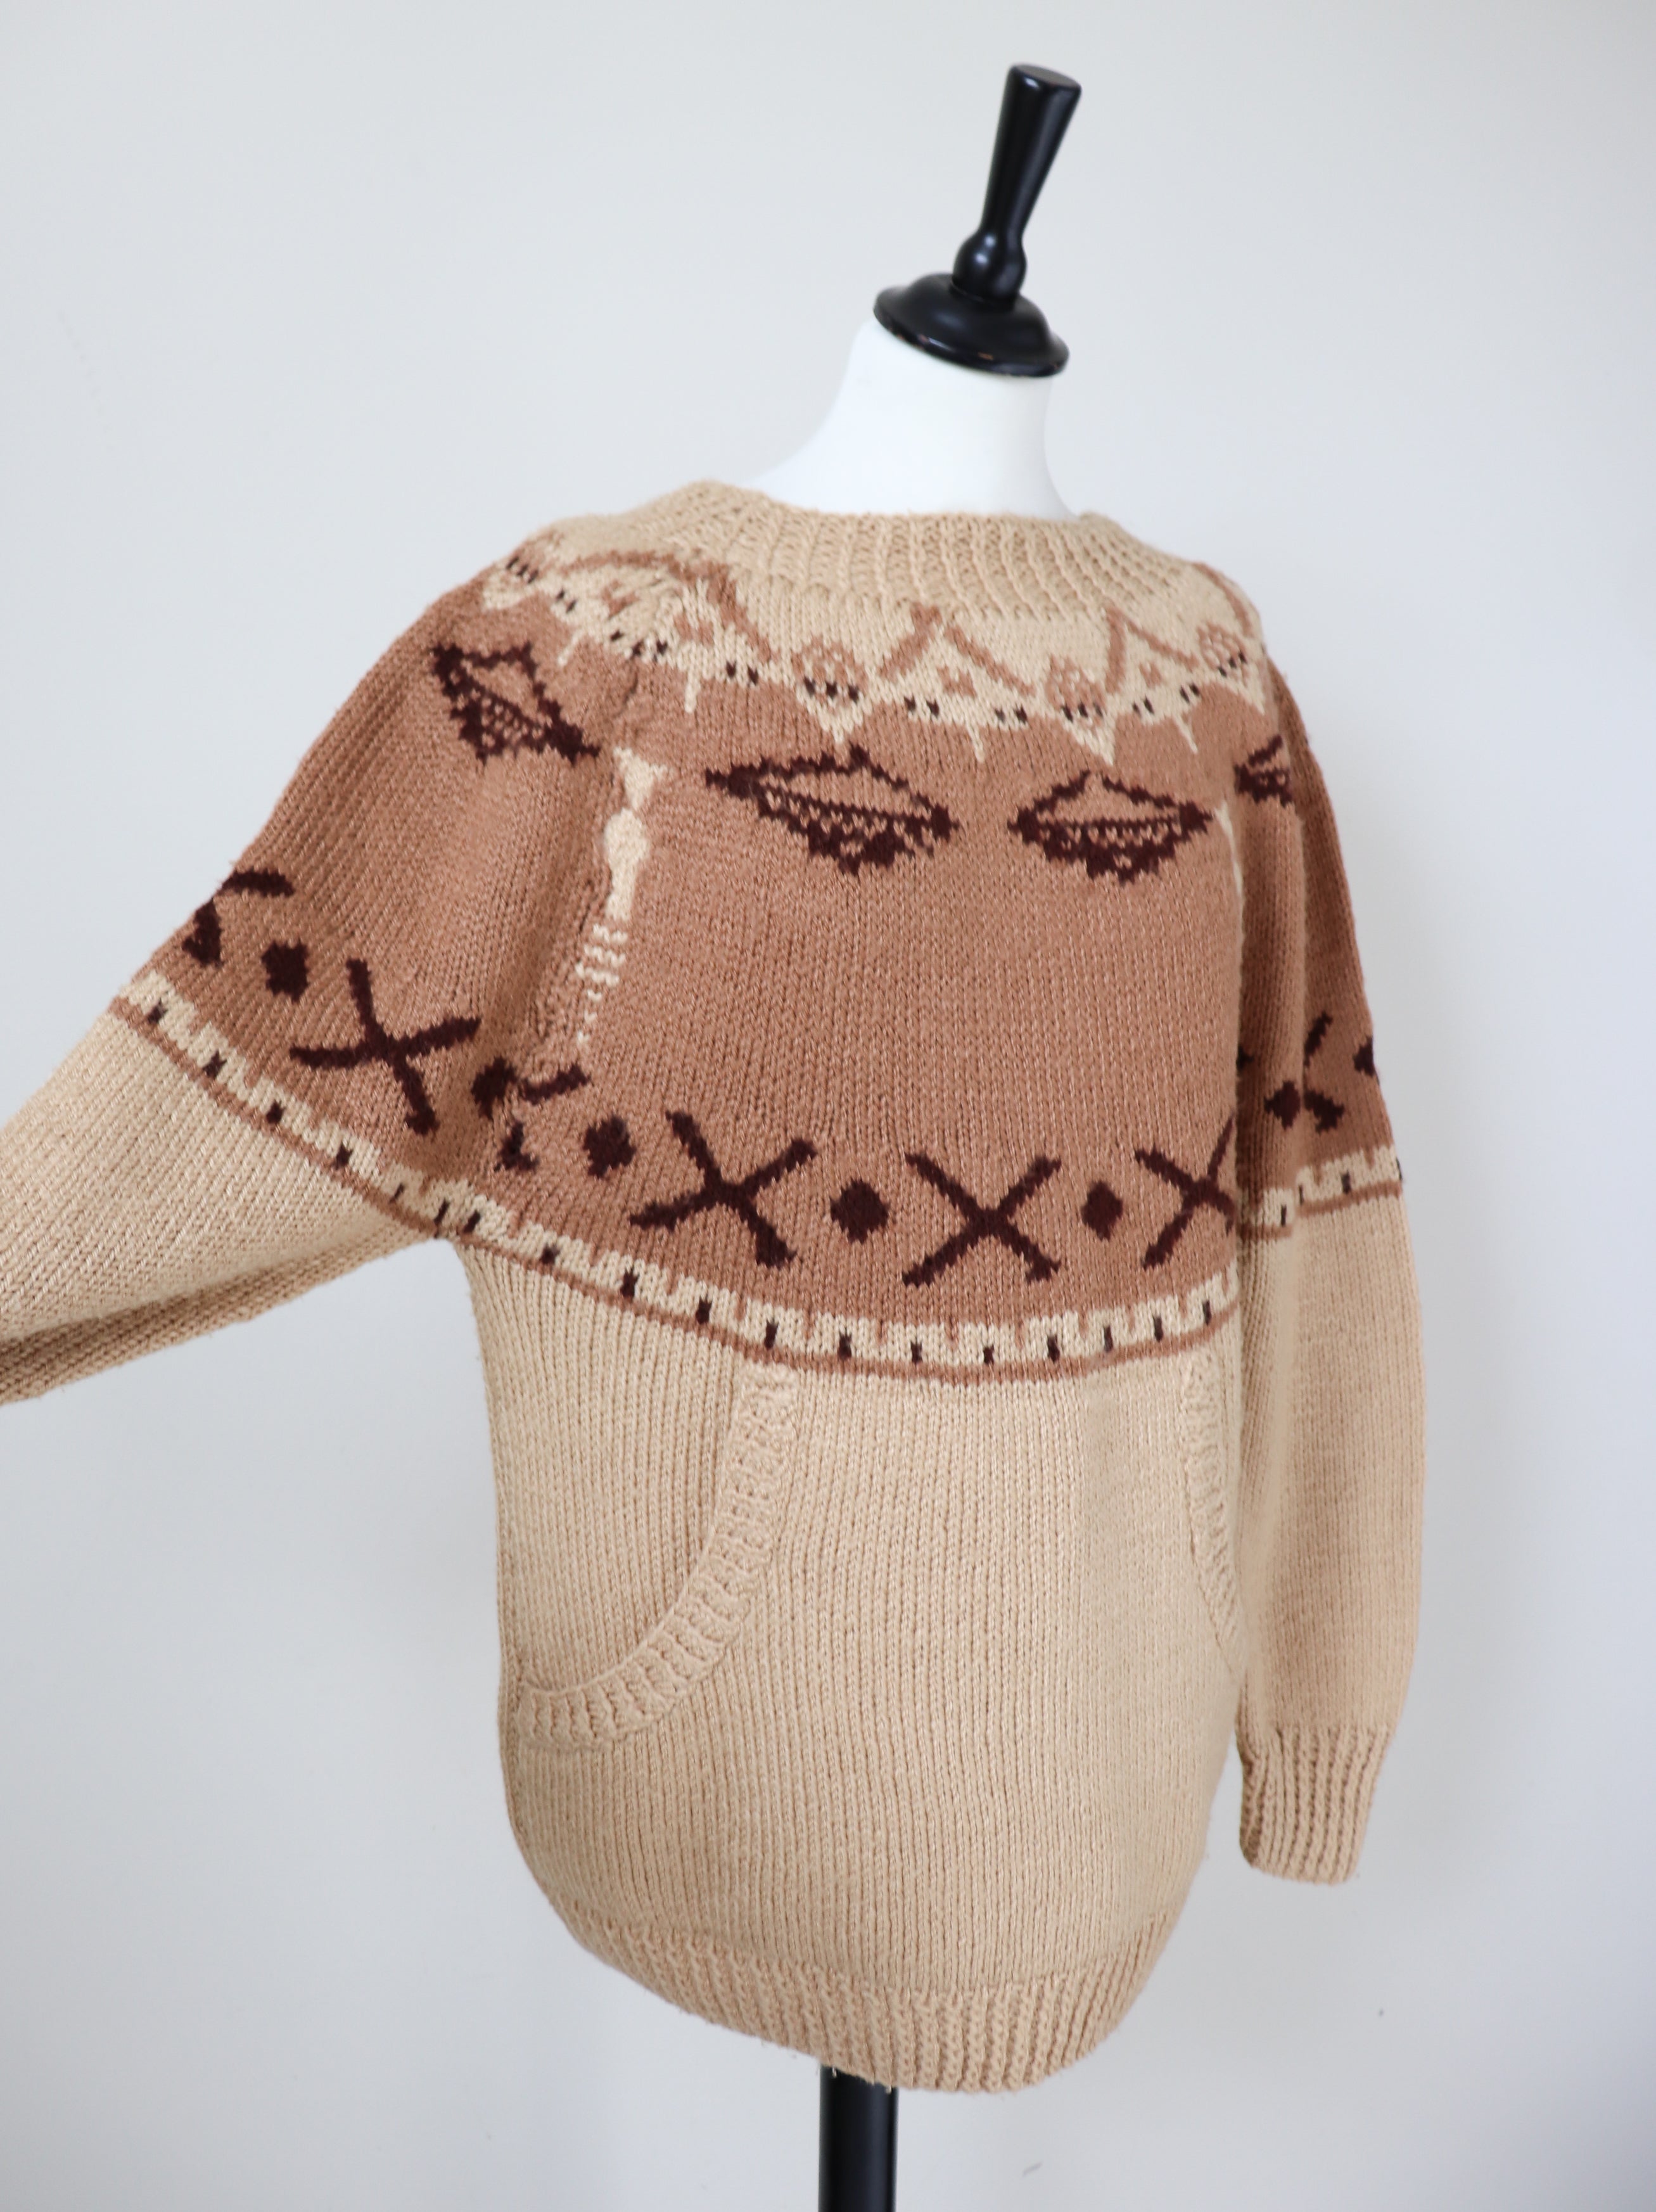 Vintage Hand Knit Nordic Jumper - Wool Blend  - Brown - L / UK 14